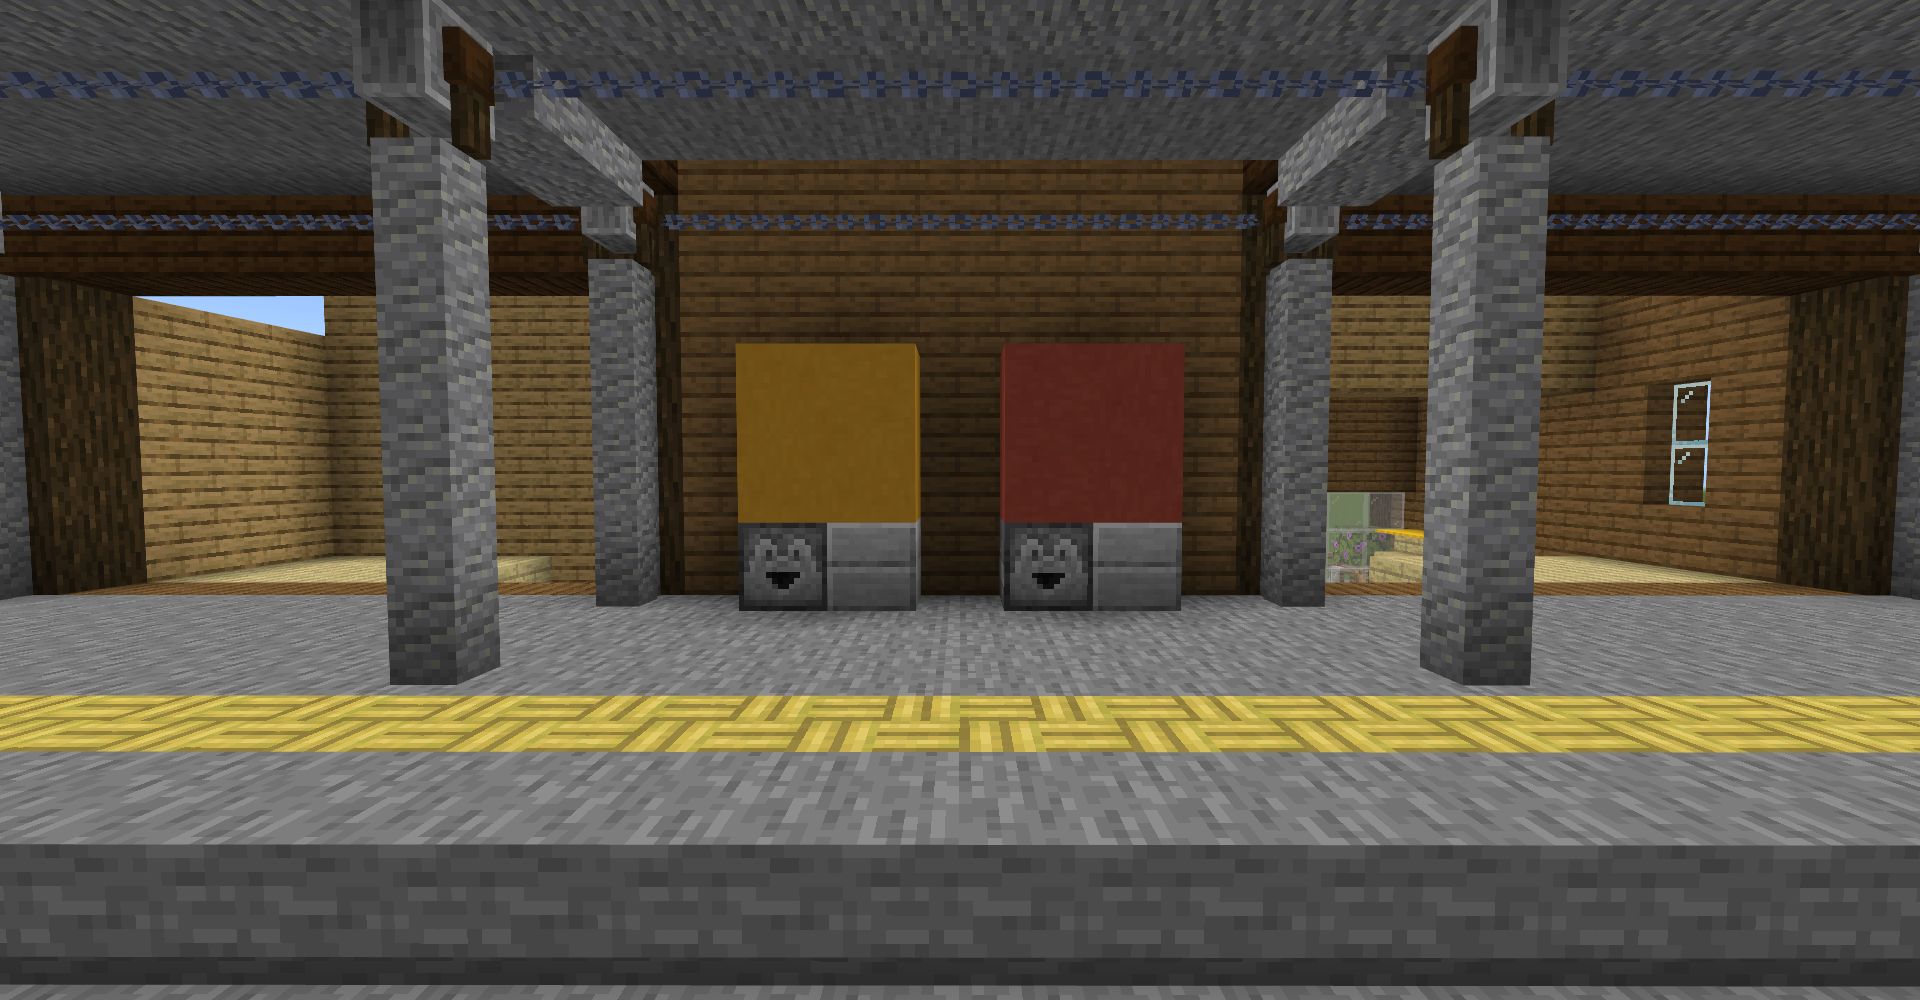 「黄色のテラコッタ」「赤色のテラコッタ」を4個ずつ、下には「ドロッパー」と「石のハーフブロック」2個を設置